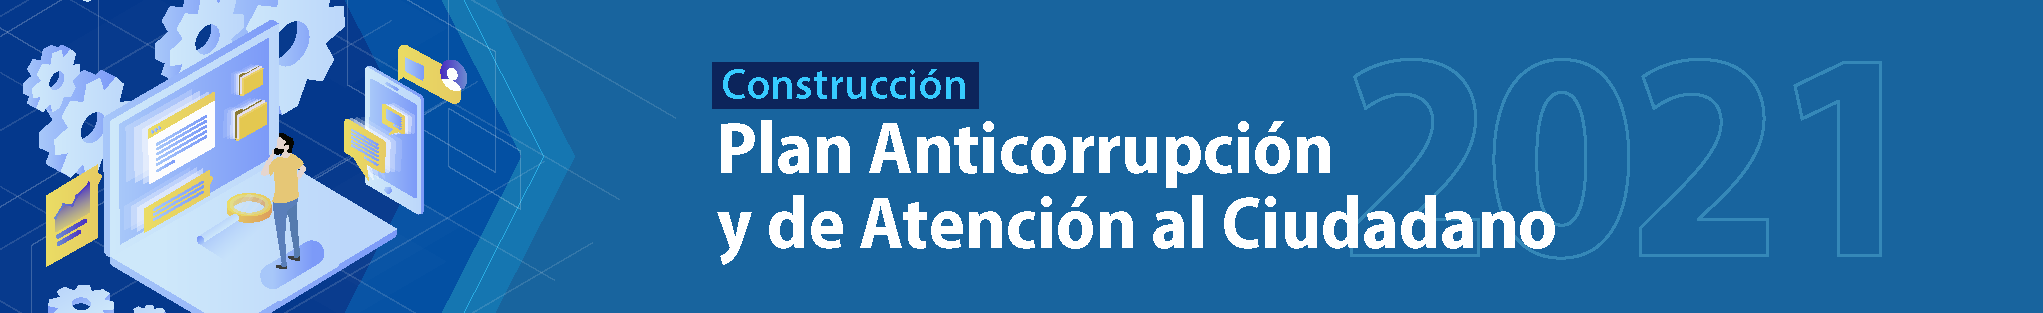 Construcción Plan Anticorrupción y de Atención al Ciudadano.